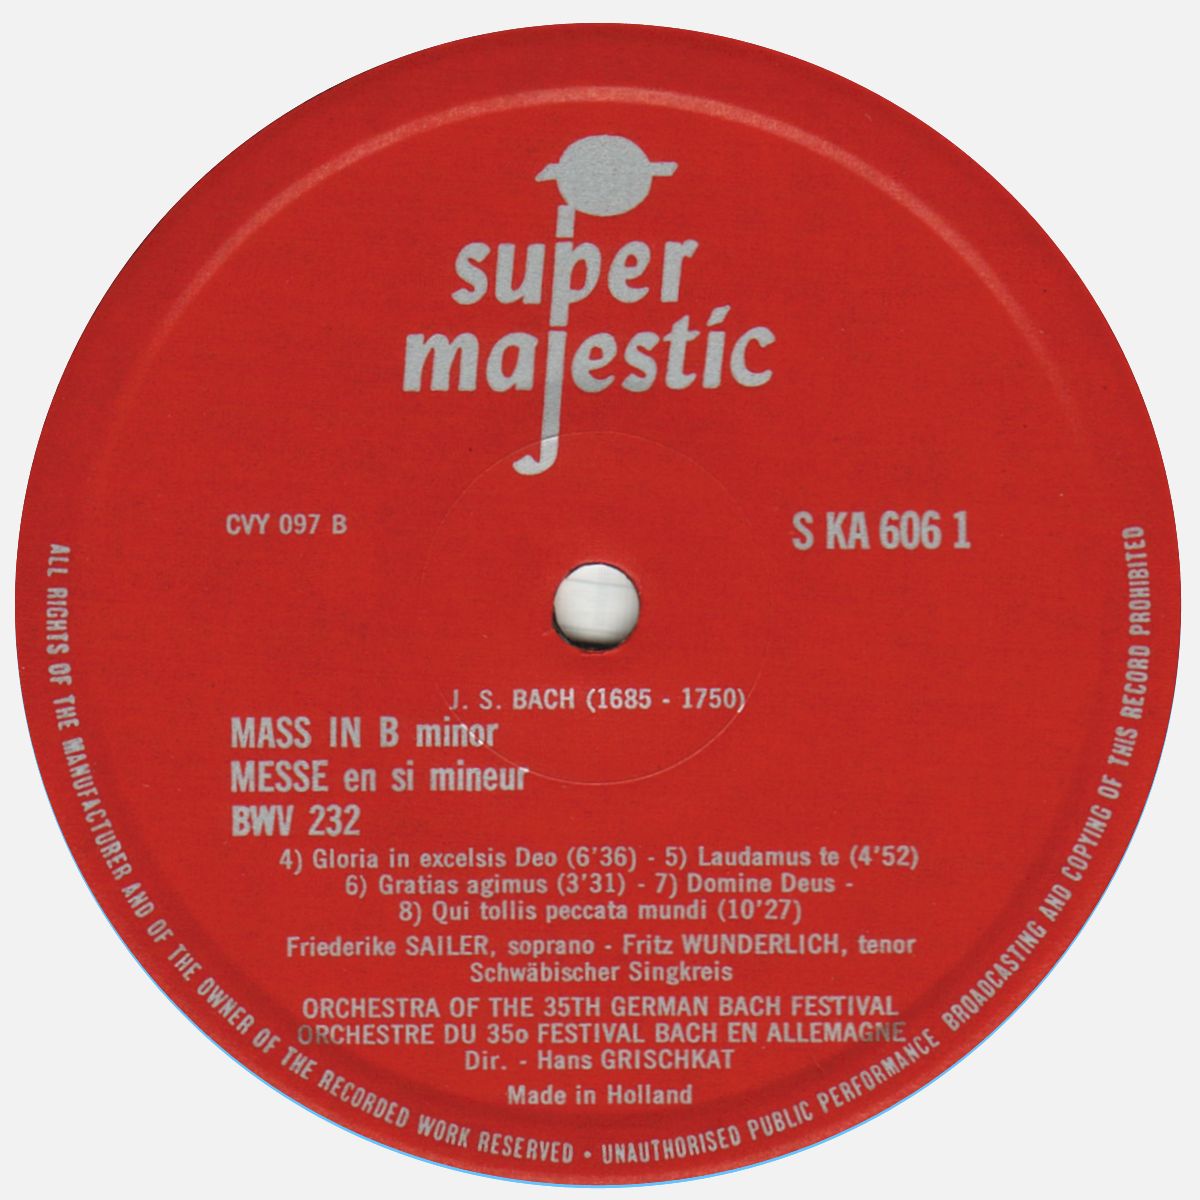 Super Majestic SM KA 606, étiquette 2e face, cliquer pour une vue agrandie